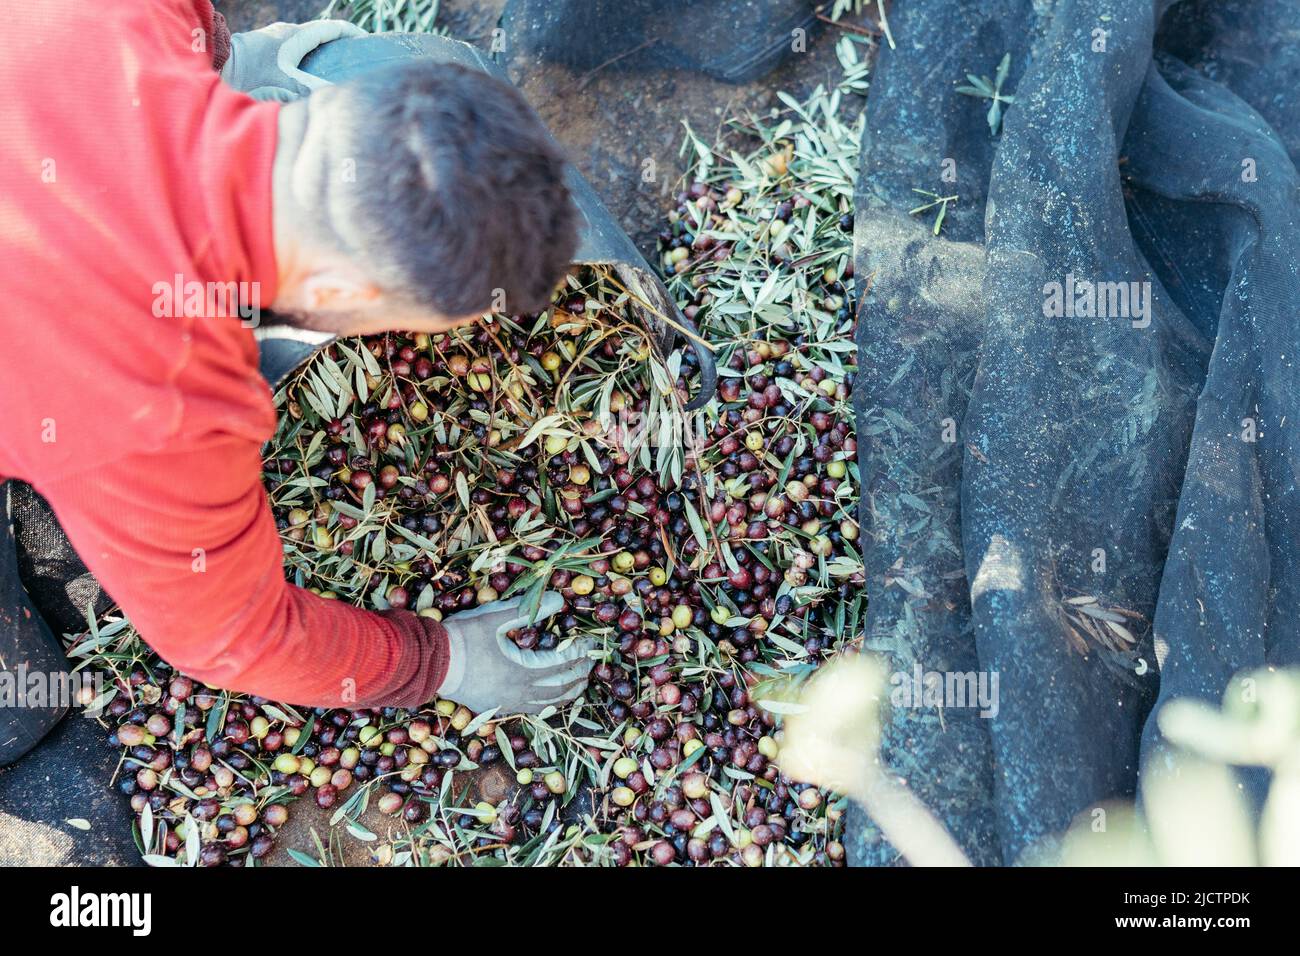 Arbeiter auf den Knien, der die geernteten Oliven in einen Korb legte Stockfoto